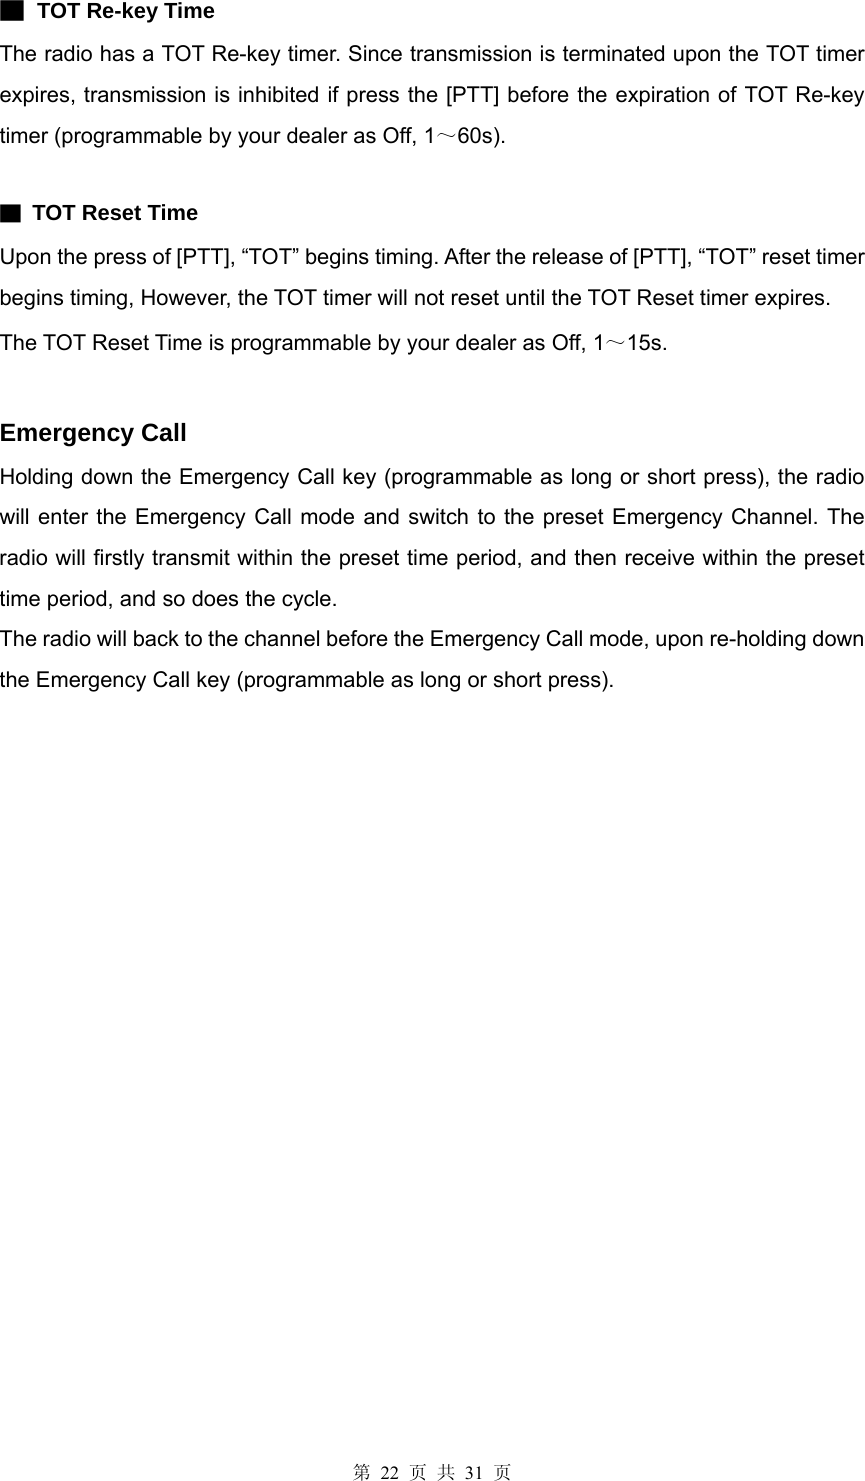 第 22 页 共 31 页 ▇ TOT Re-key Time The radio has a TOT Re-key timer. Since transmission is terminated upon the TOT timer expires, transmission is inhibited if press the [PTT] before the expiration of TOT Re-key timer (programmable by your dealer as Off, 1～60s).  ▇ TOT Reset Time Upon the press of [PTT], “TOT” begins timing. After the release of [PTT], “TOT” reset timer begins timing, However, the TOT timer will not reset until the TOT Reset timer expires. The TOT Reset Time is programmable by your dealer as Off, 1～15s.   Emergency Call Holding down the Emergency Call key (programmable as long or short press), the radio will enter the Emergency Call mode and switch to the preset Emergency Channel. The radio will firstly transmit within the preset time period, and then receive within the preset time period, and so does the cycle. The radio will back to the channel before the Emergency Call mode, upon re-holding down the Emergency Call key (programmable as long or short press).                              